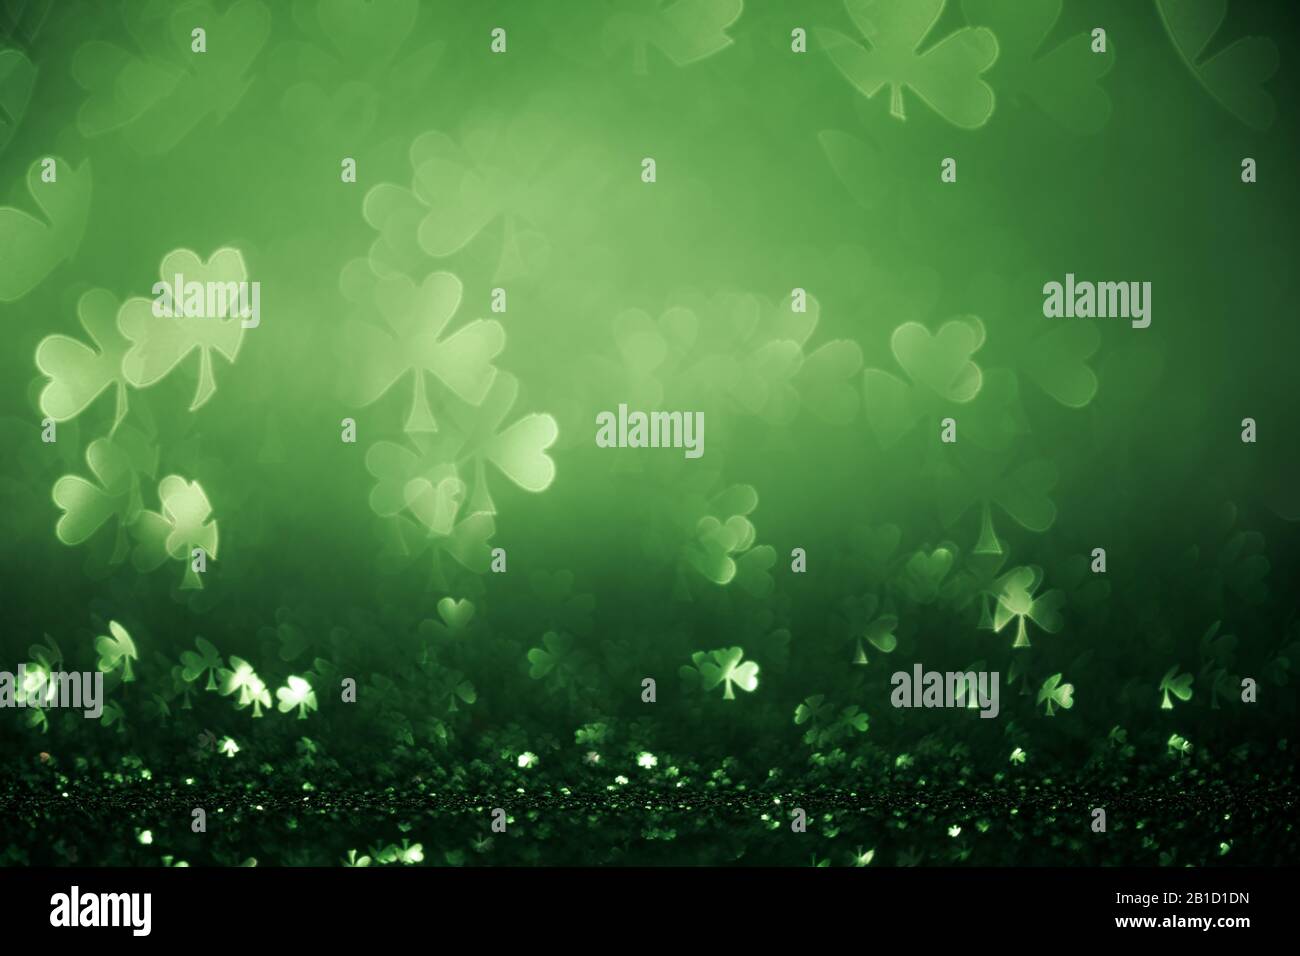 Grüner St. Patricks Tageshintergrund mit funkelnden Shamrockformen Stockfoto